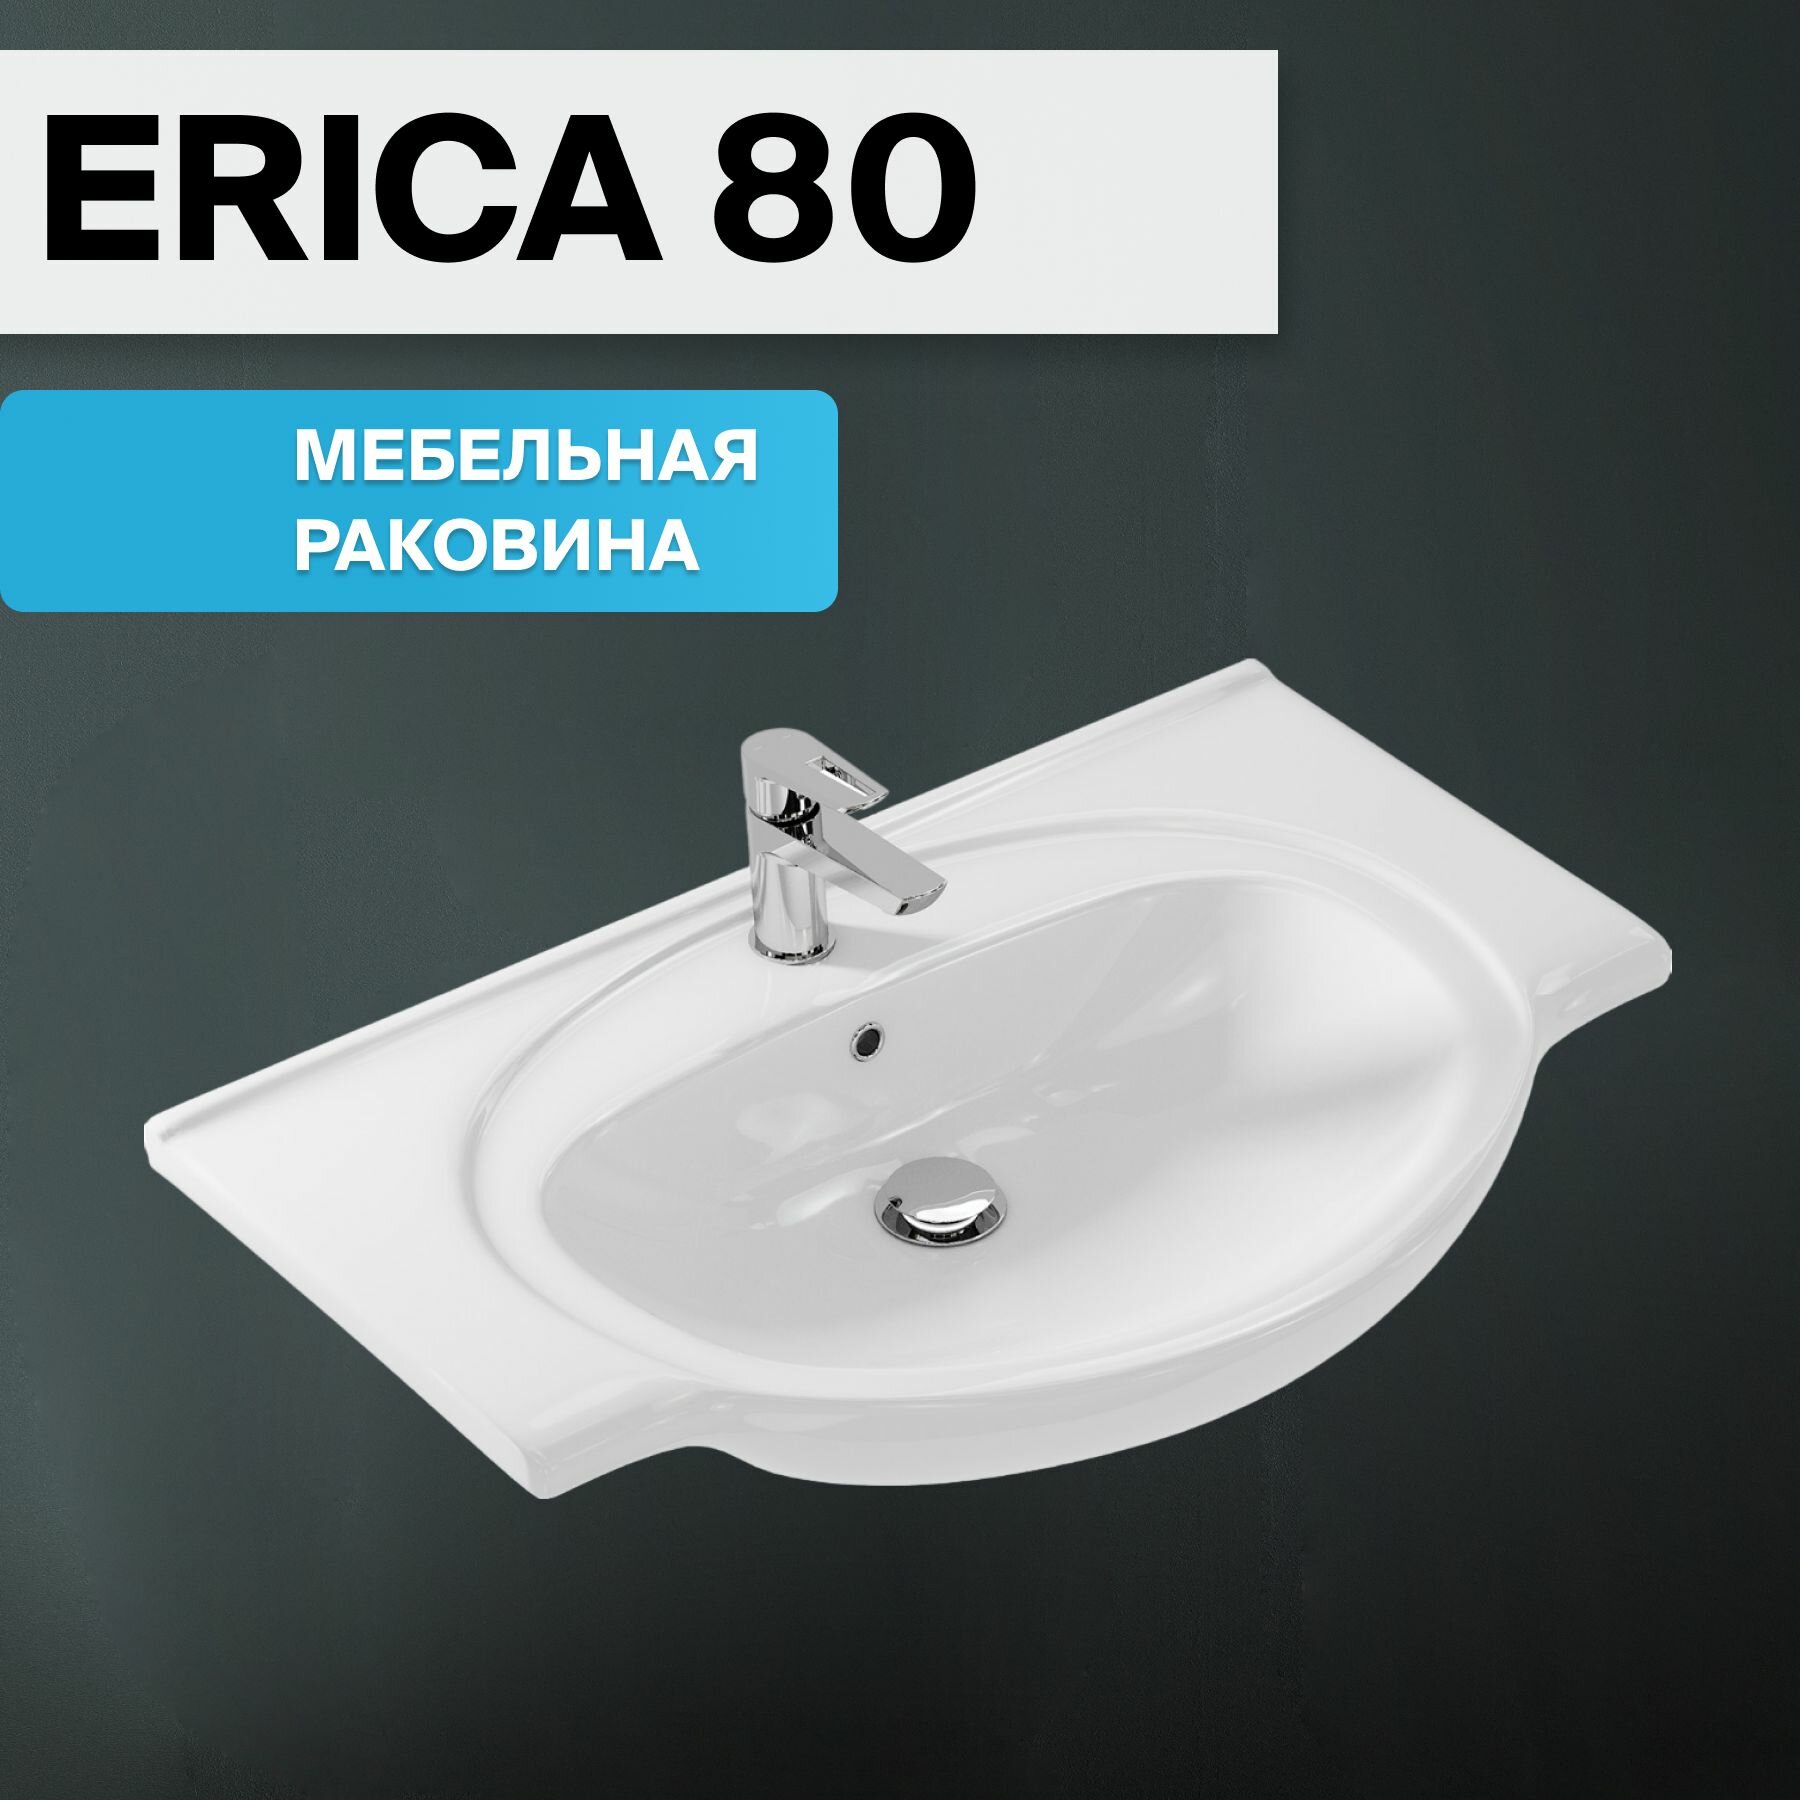 Раковина для ванной комнаты Cersanit мебельная ERICA 80 белая, Гаратния 10 лет